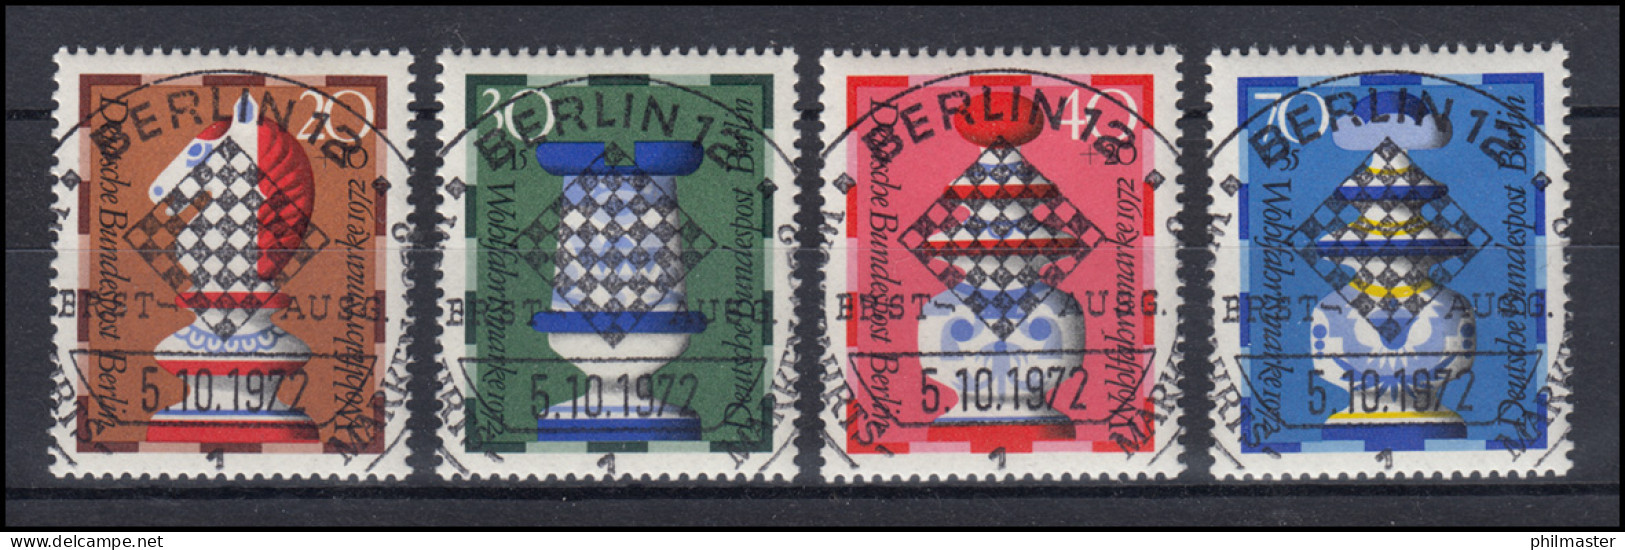 435-438 Wofa Schachfiguren 1972 - Satz Mit Vollstempel ESSt BERLIN - Used Stamps